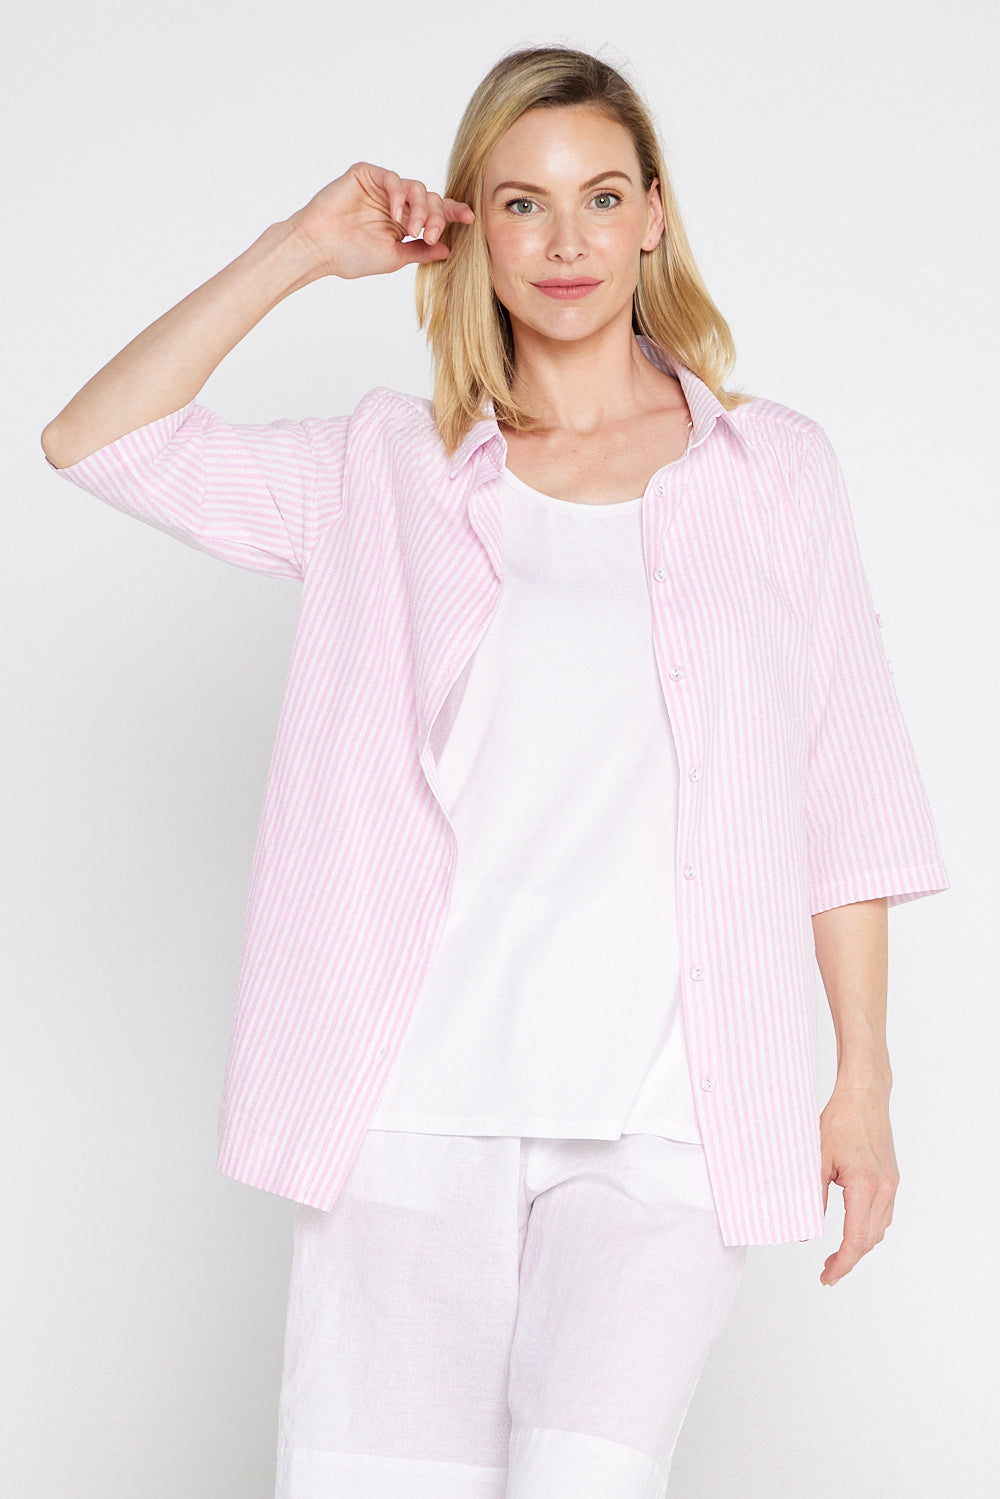 Linderman Cotton Shirt - Pink Stripe